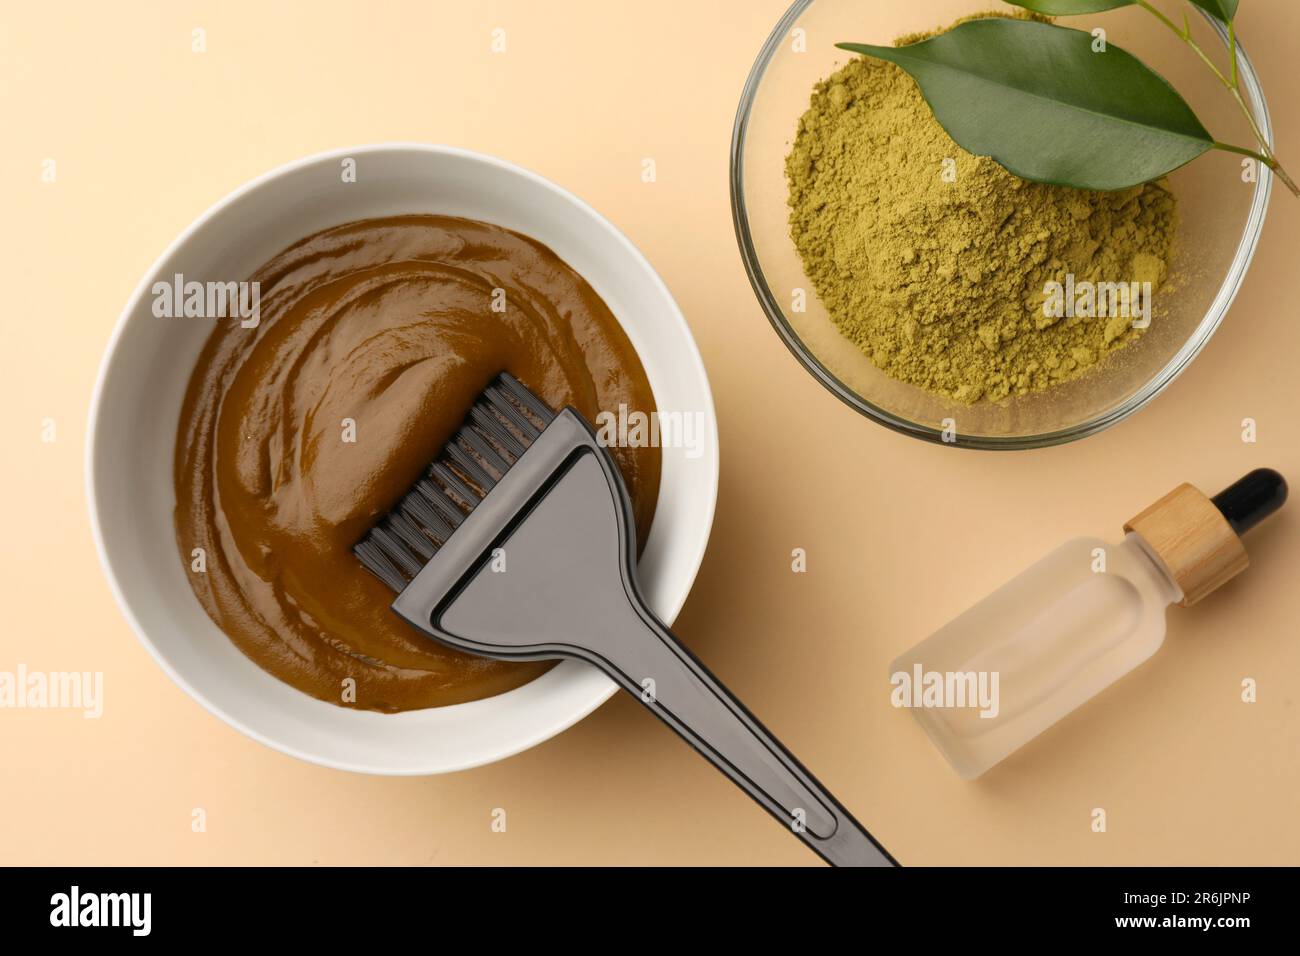 Poudre de henné et crème, bouteille de liquide sur fond beige, plat.  Coloration naturelle des cheveux Photo Stock - Alamy